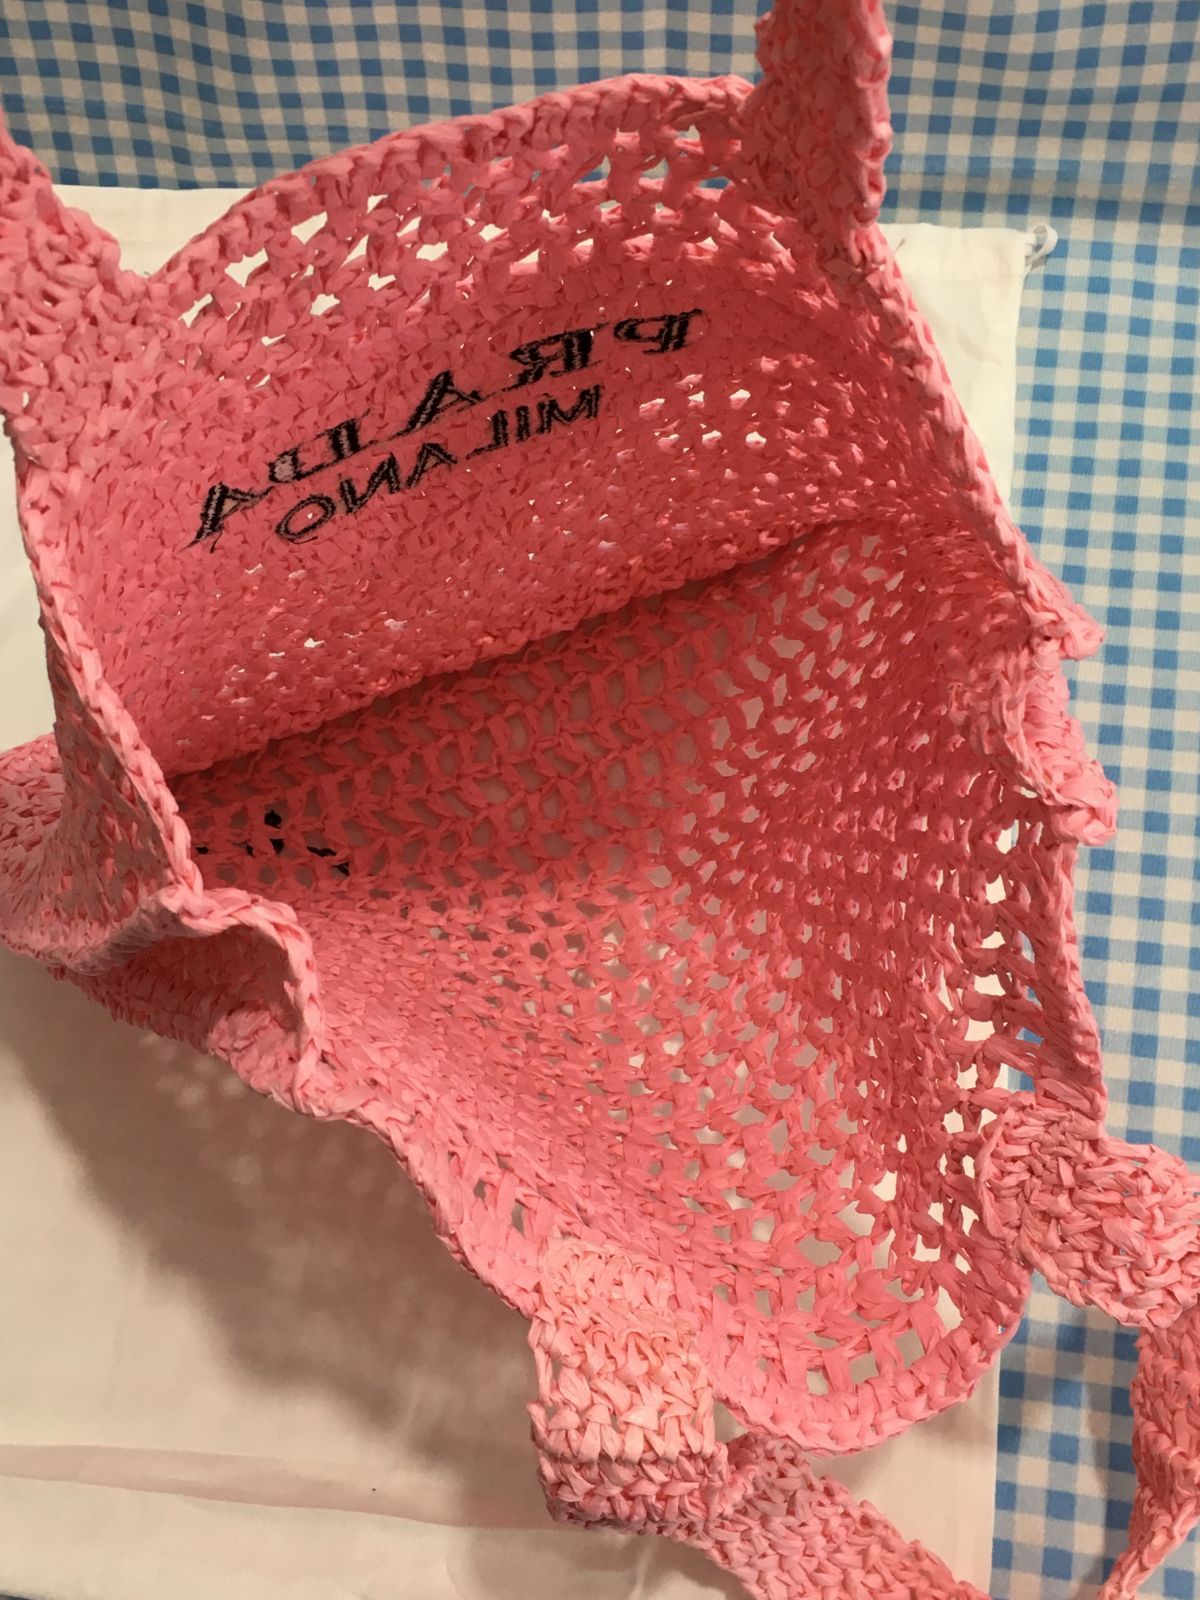 PRADA プラダ トートバッグ かごバッグ 草編み ラフィア ピンク